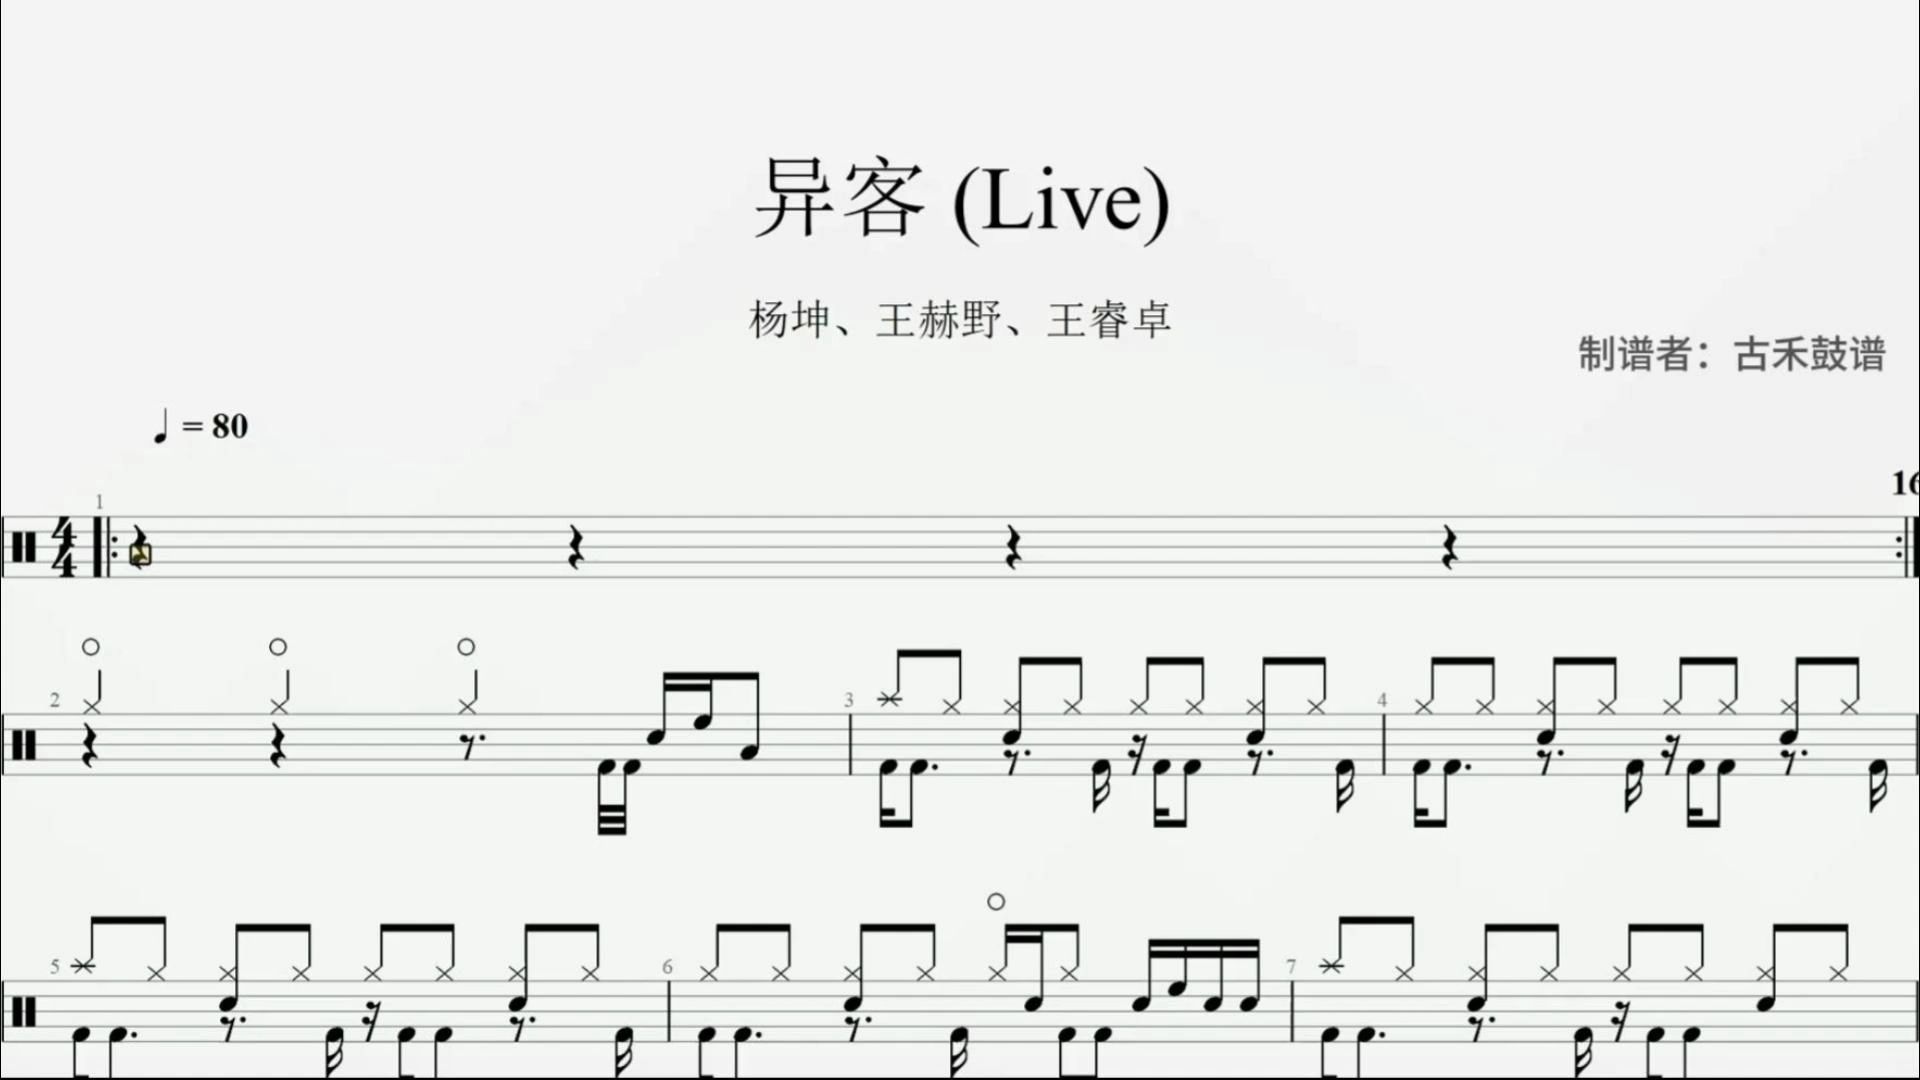 【天赐的声音】杨坤、王赫野、王睿卓《异客》 (Live)架子鼓动态鼓谱